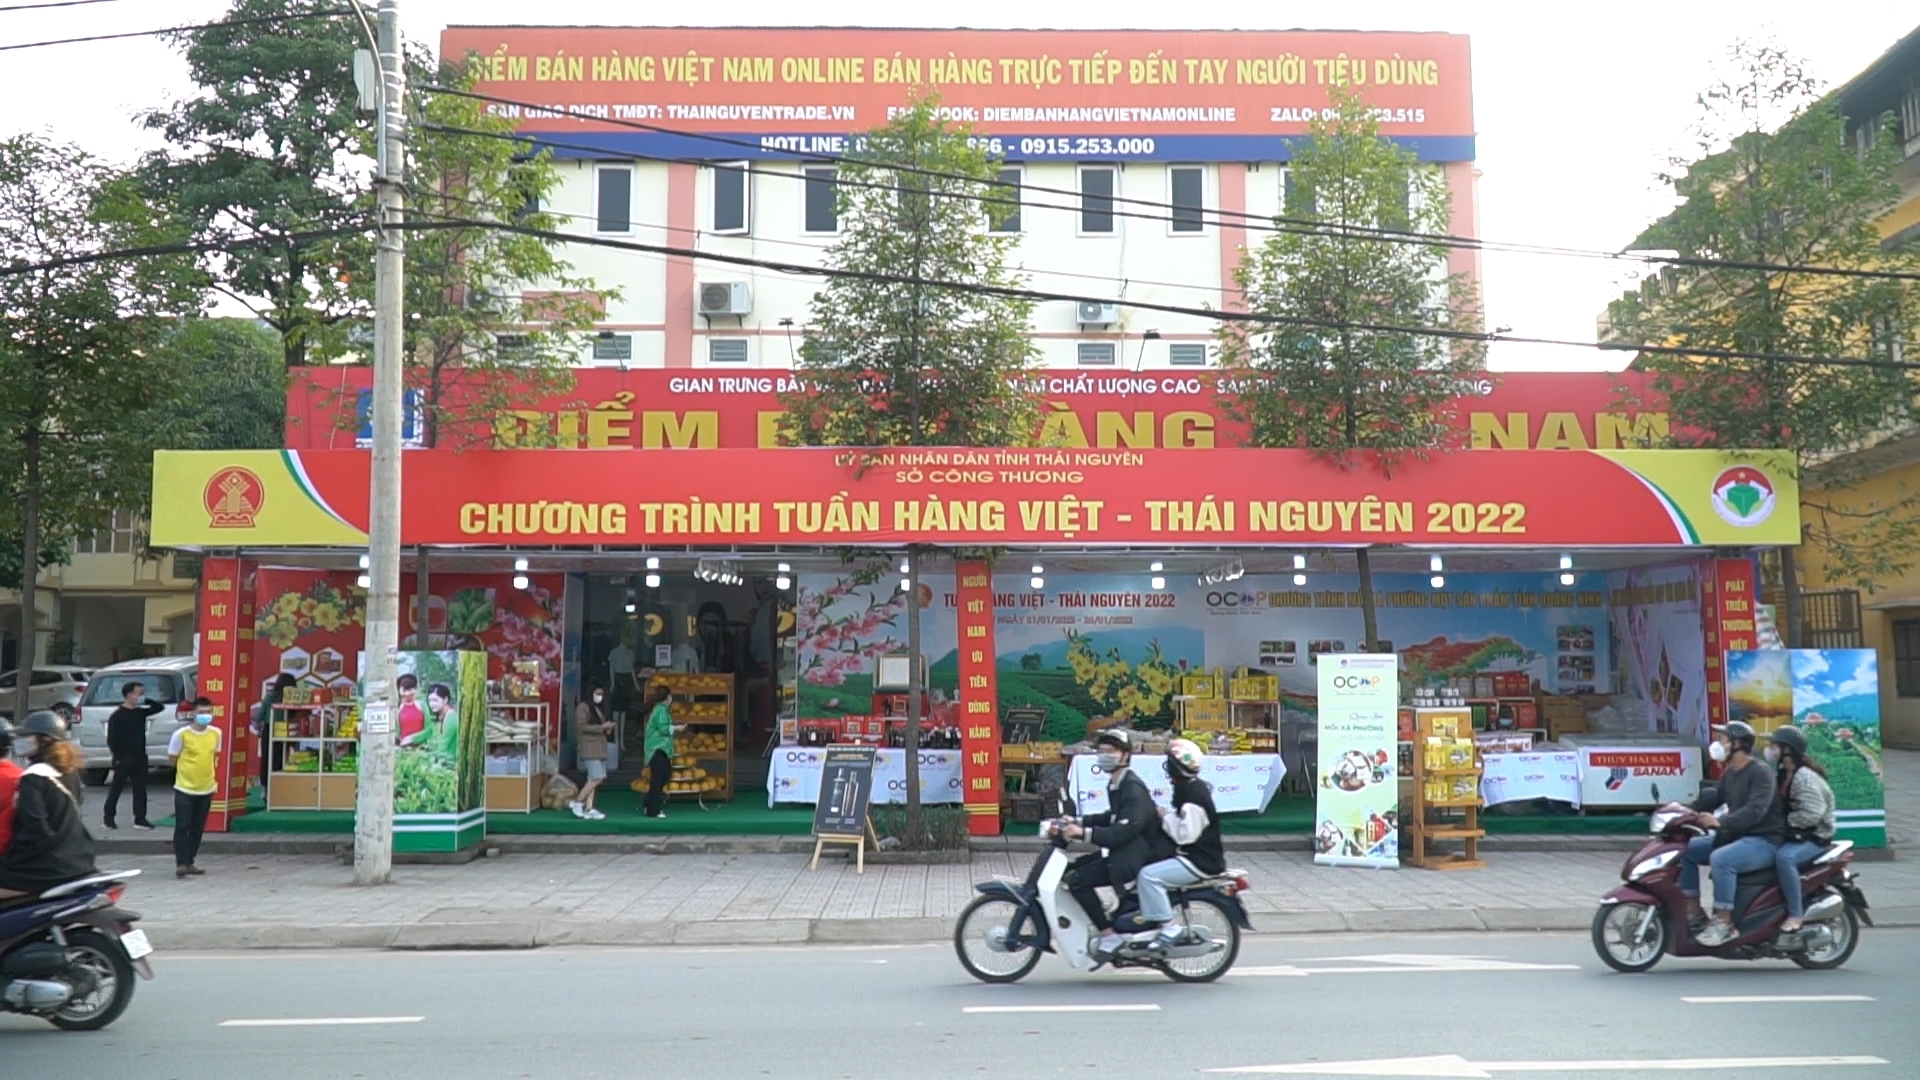 Tuần hàng Việt - Thái Nguyên năm 2022